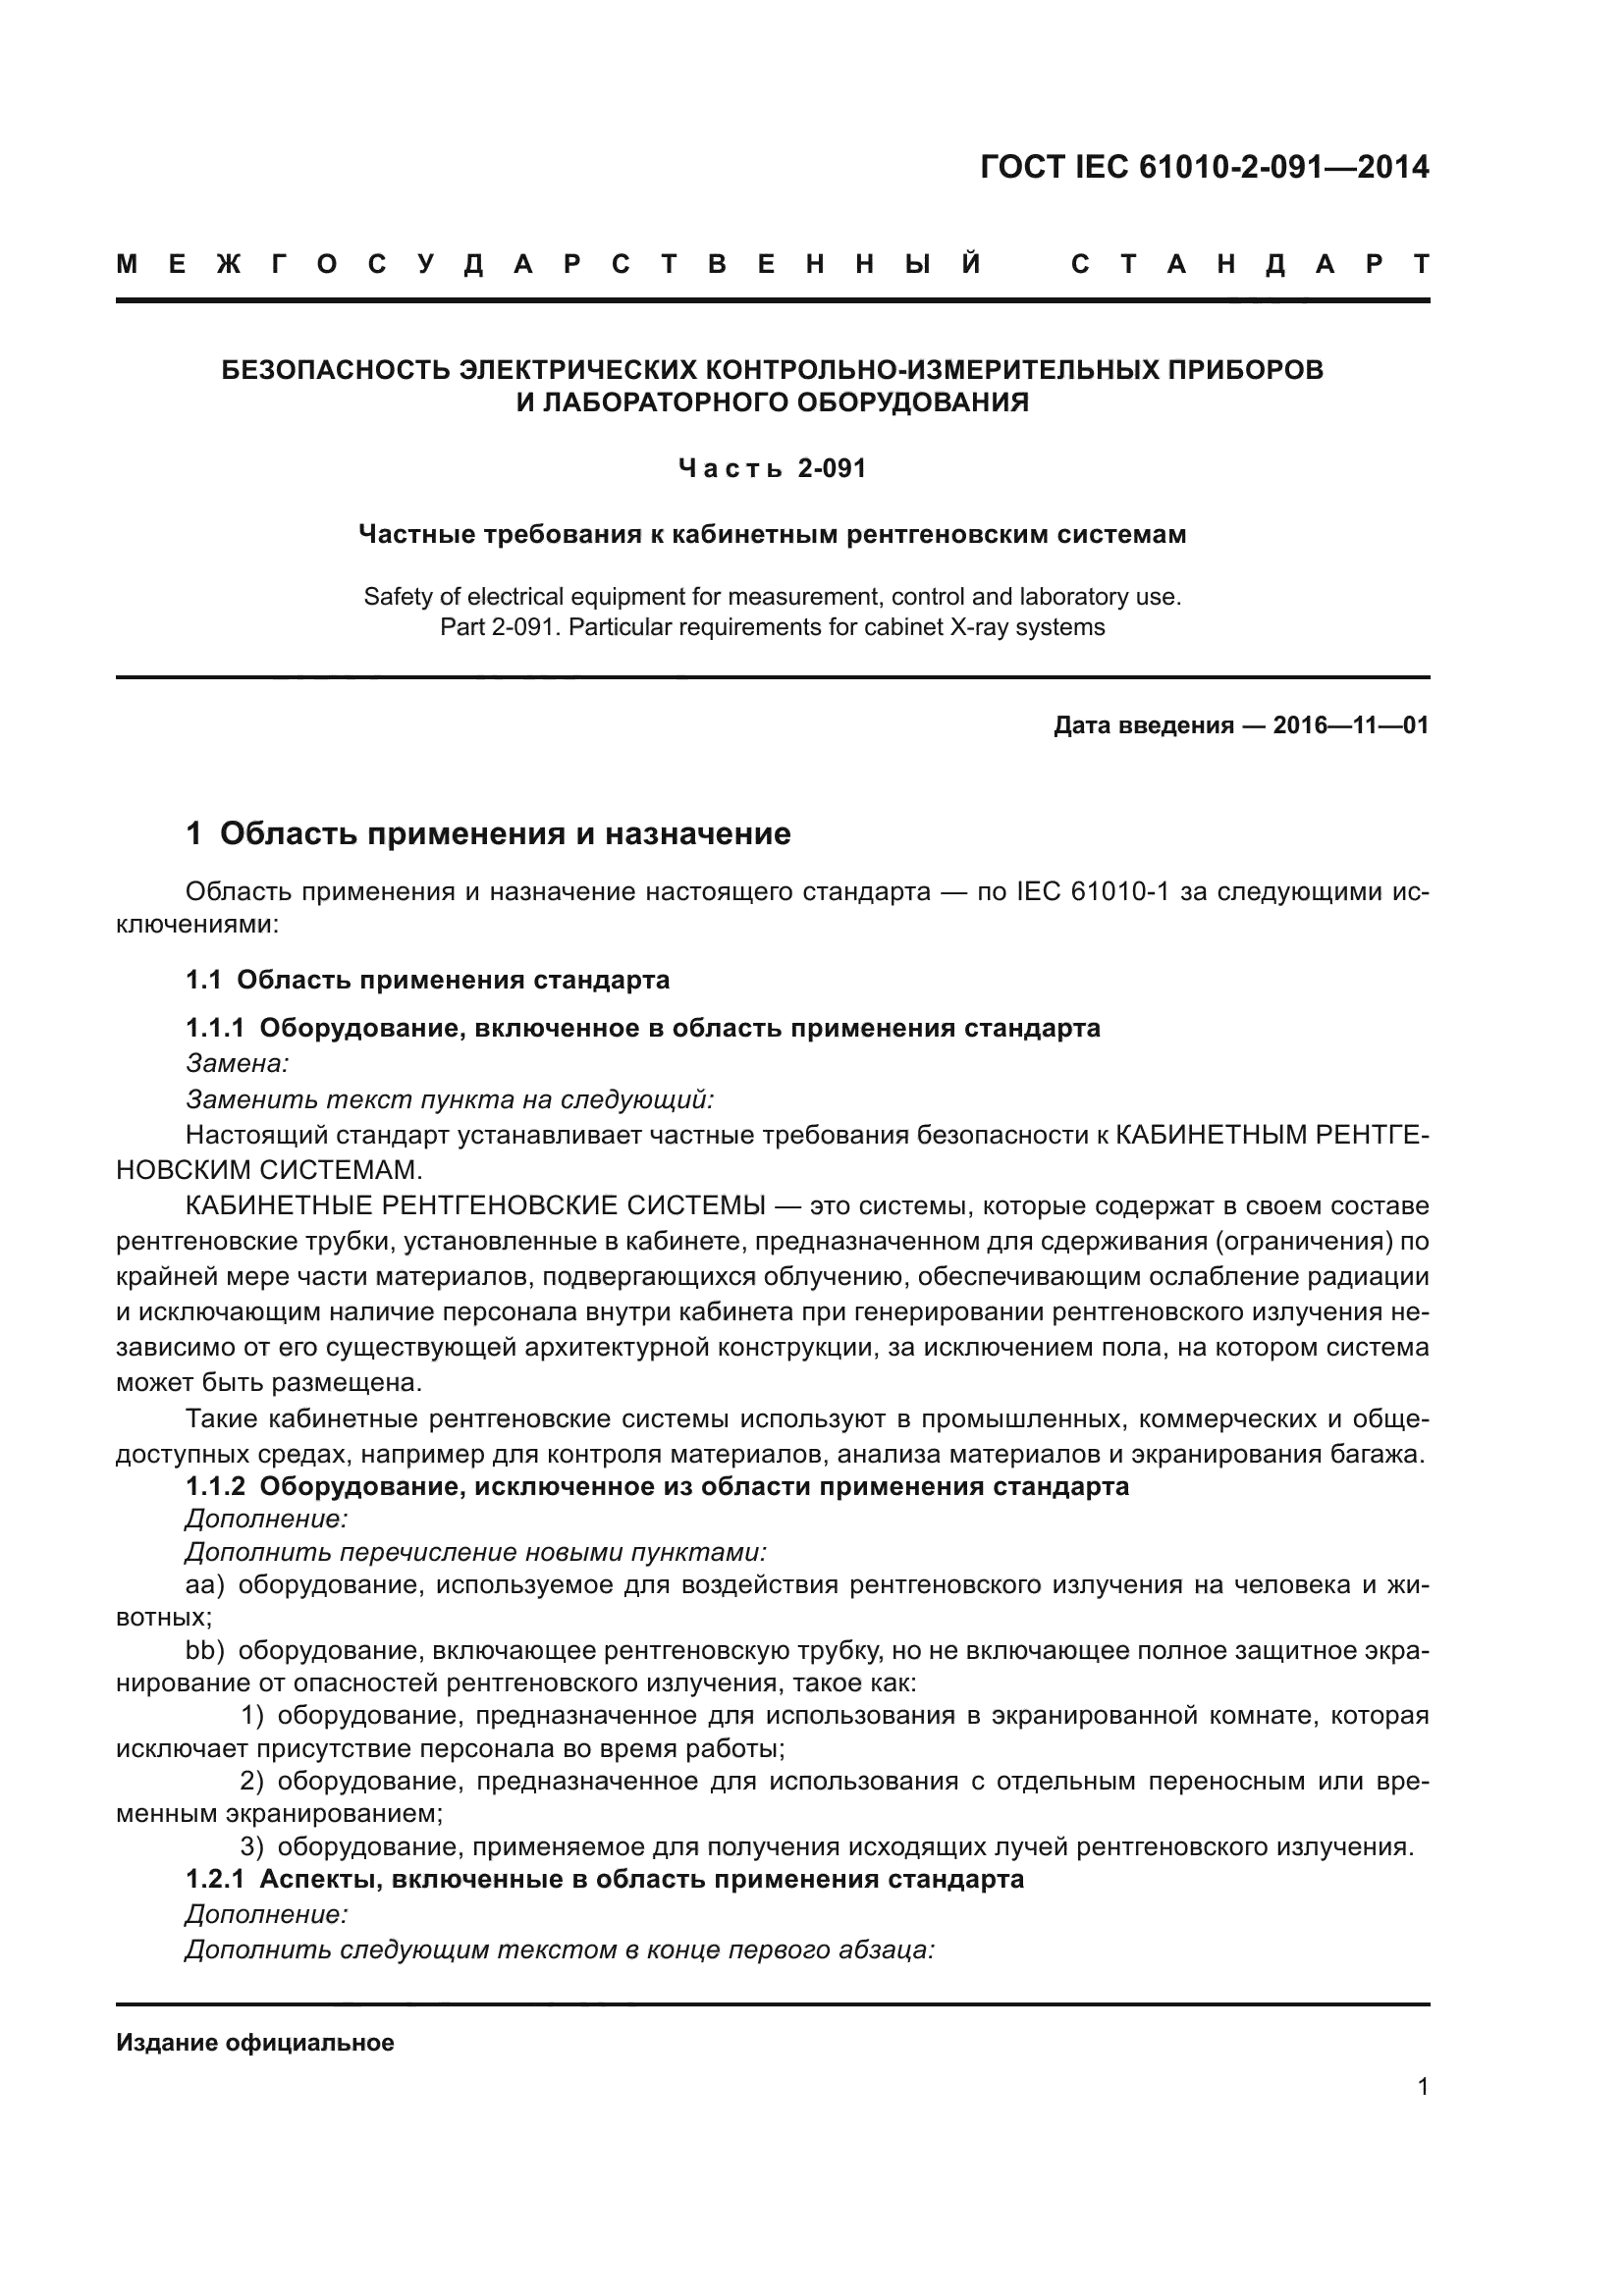 ГОСТ IEC 61010-2-091-2014